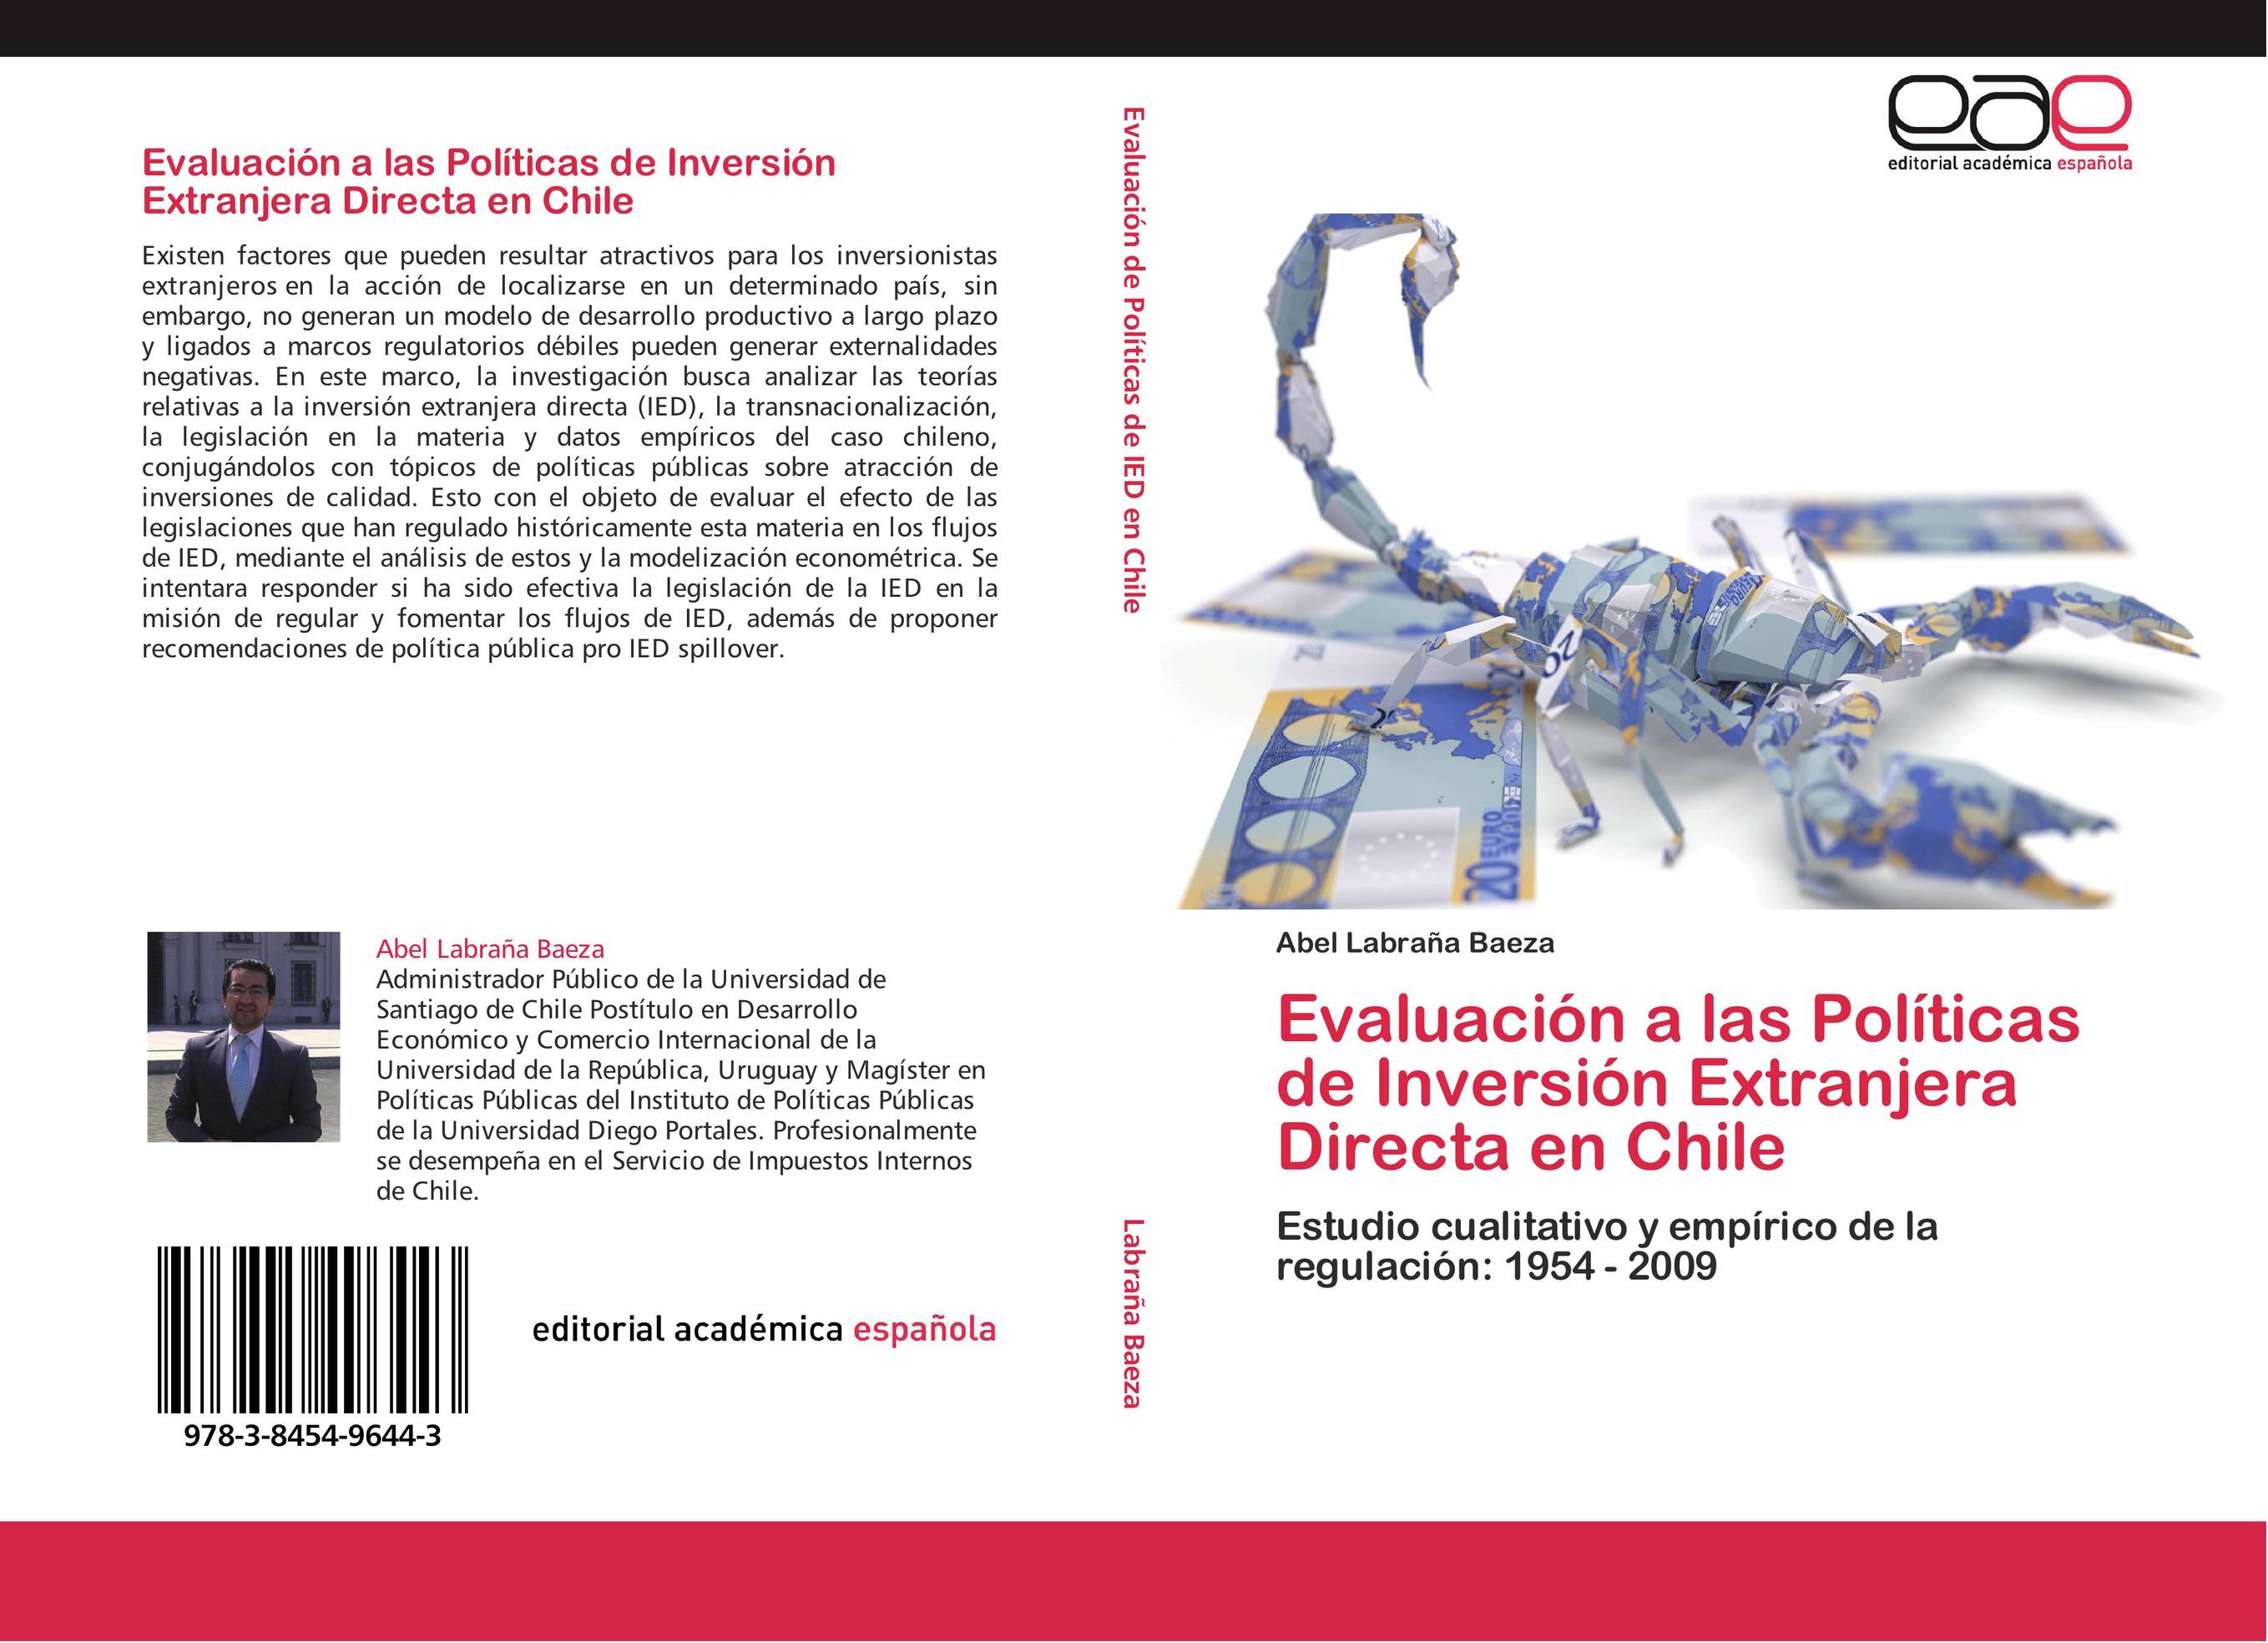 Evaluación a las Políticas de Inversión Extranjera Directa en Chile